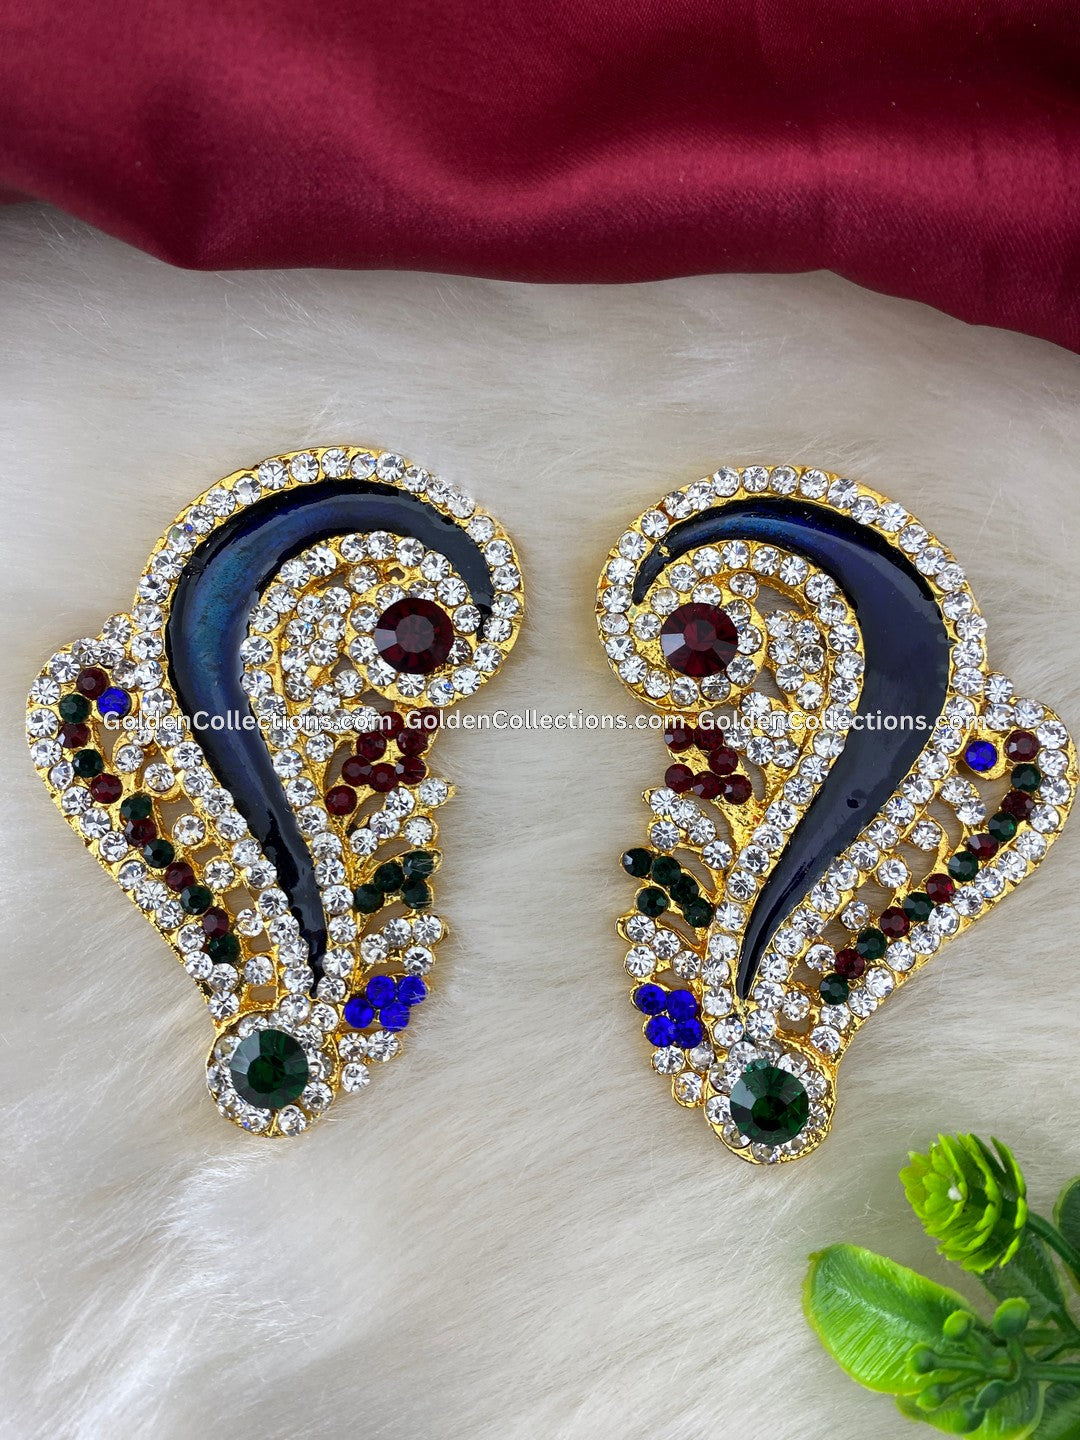 Deity Jewellery - Elegant Divine Adornments - DGE-141